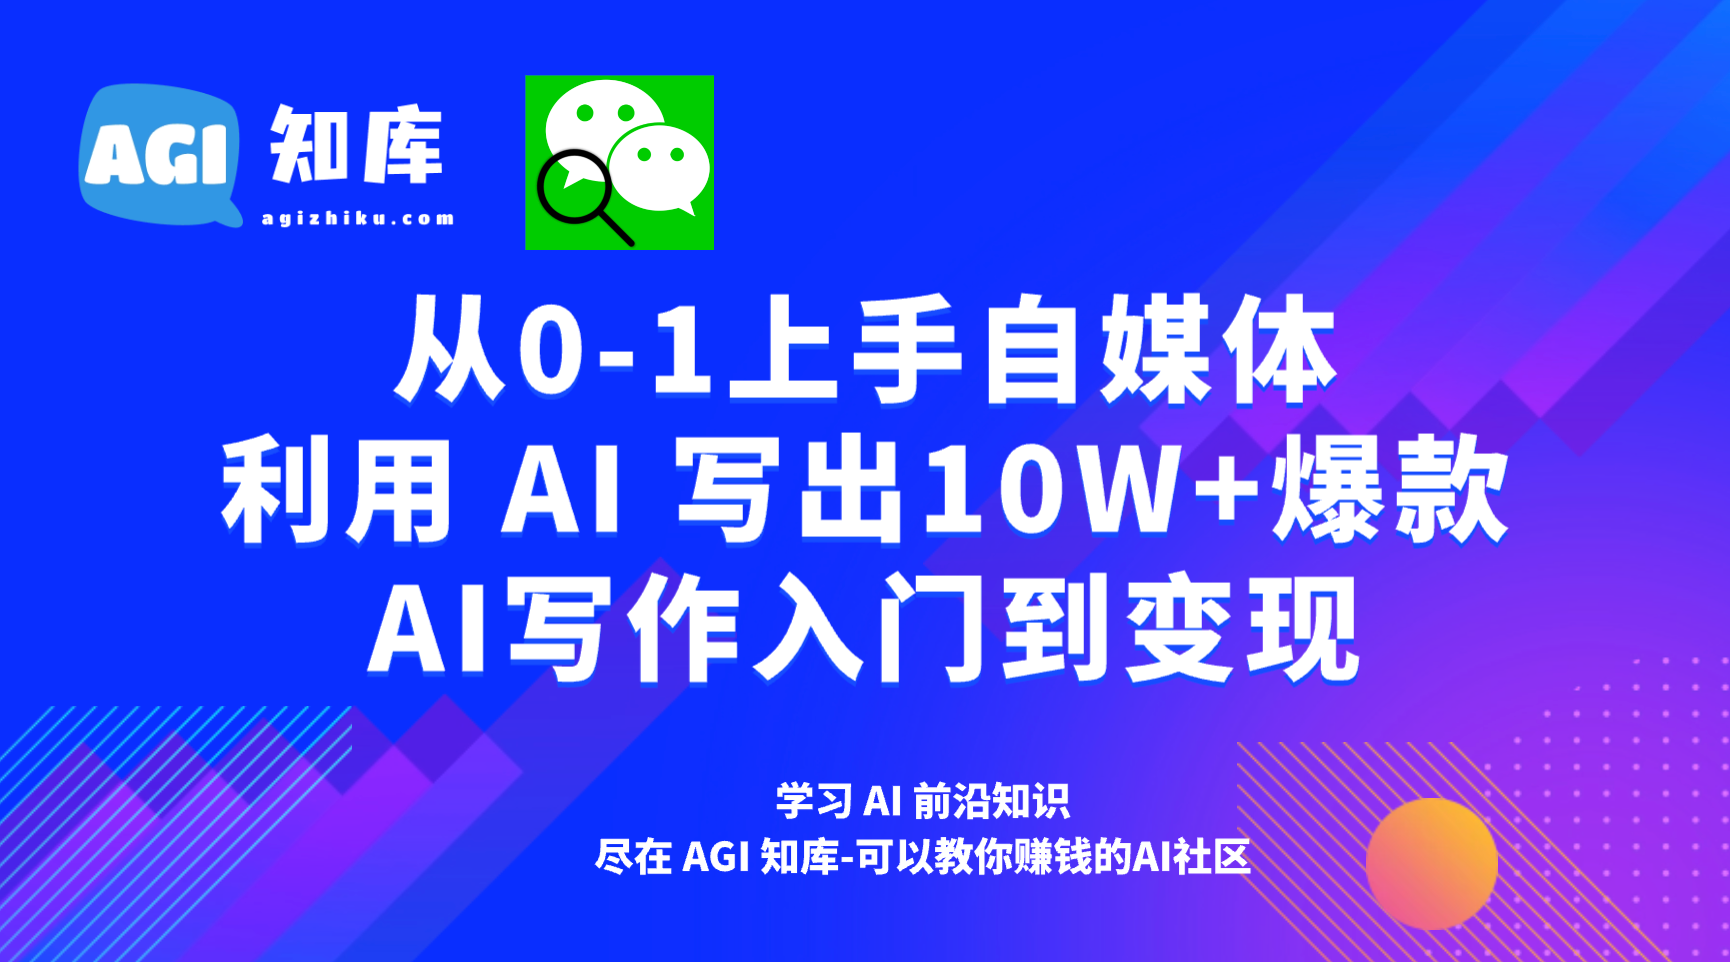 AI公众号写作38：写出一篇爆文，一共分几步-AGI智库-全国最大的AI智库社区 | AI导航 | AI学习网站